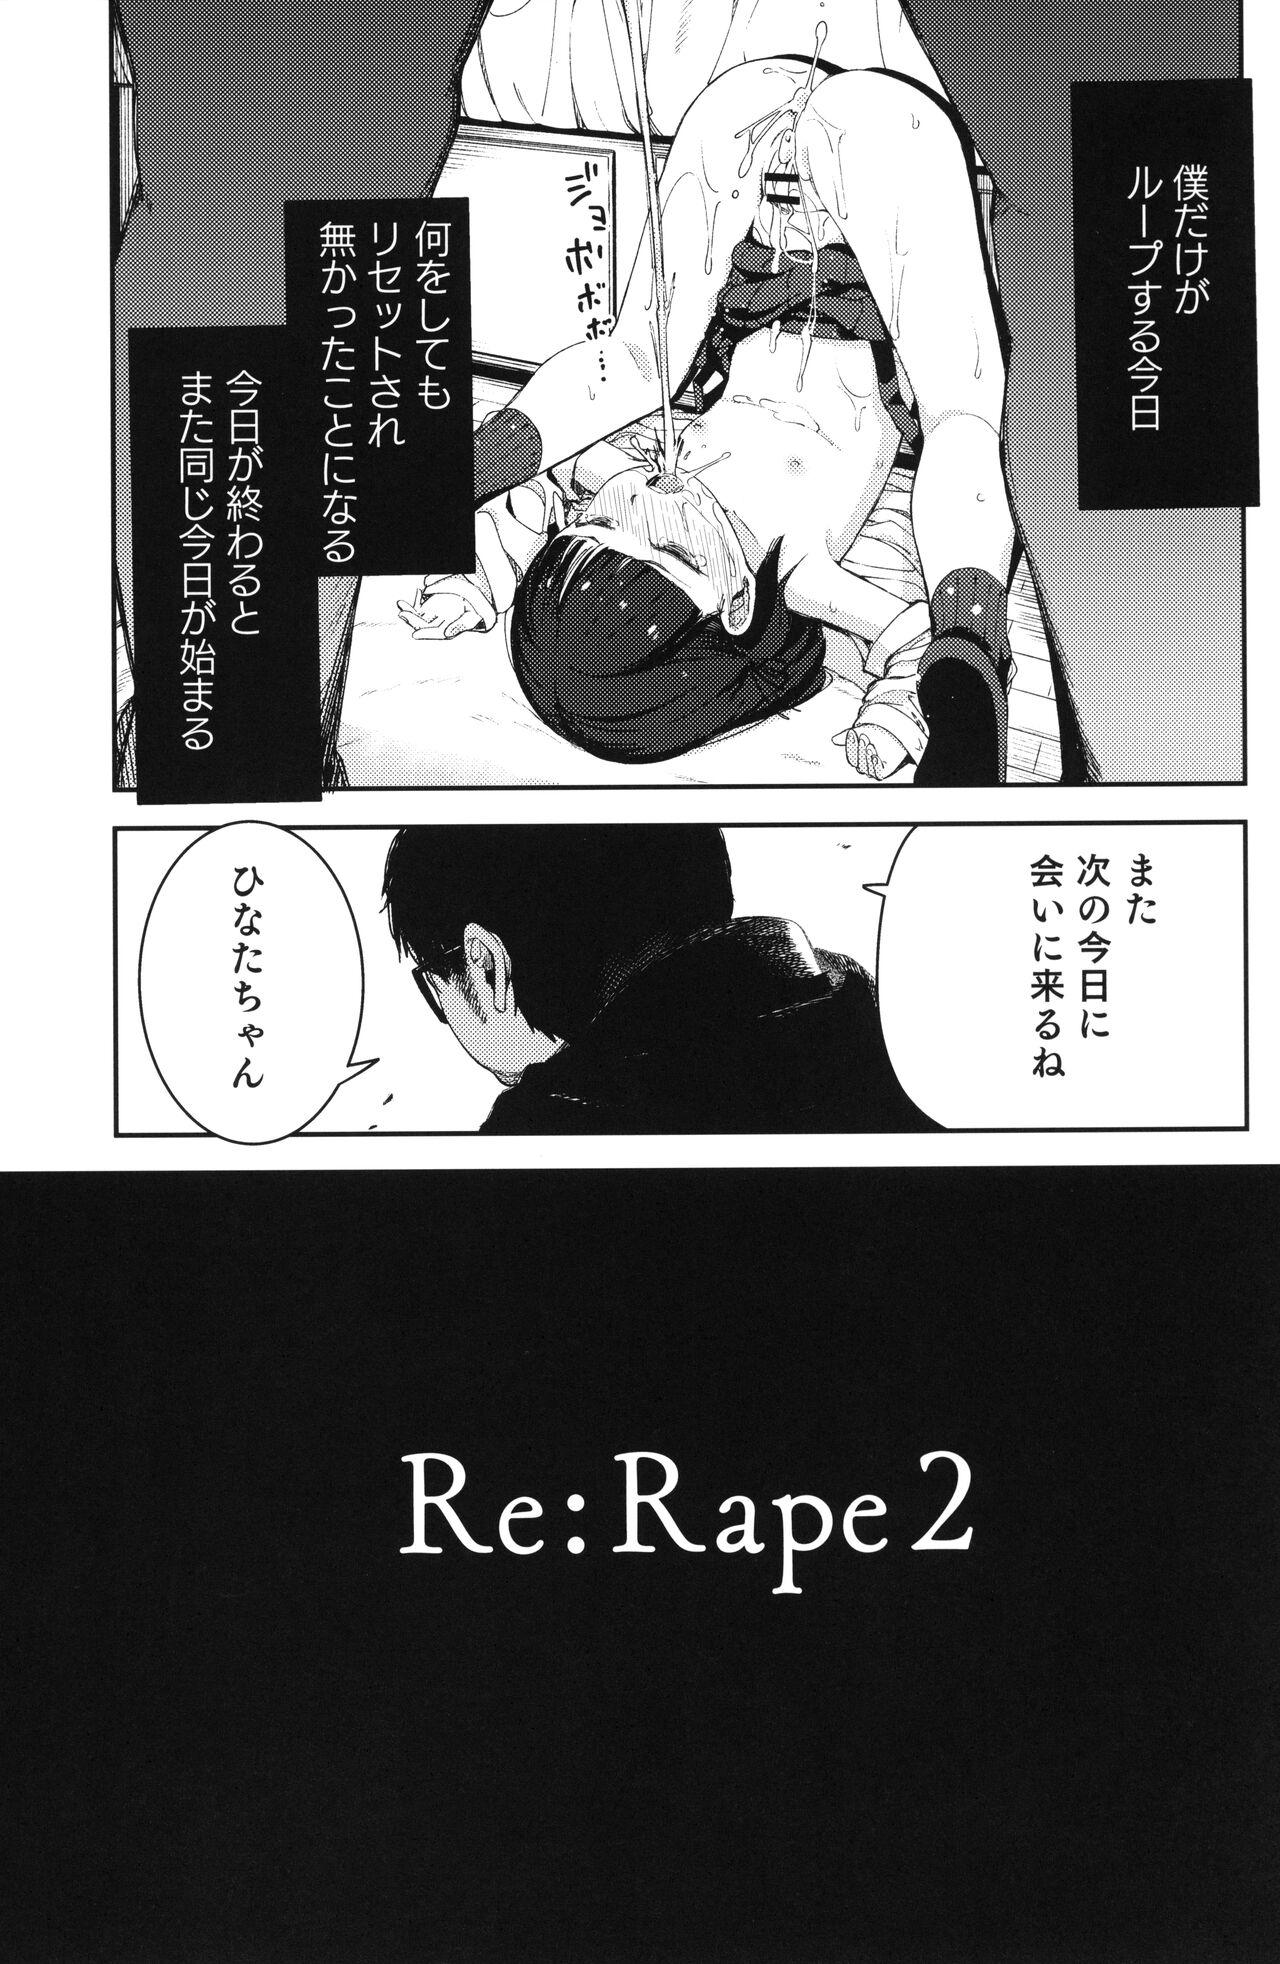 Rape 2 13